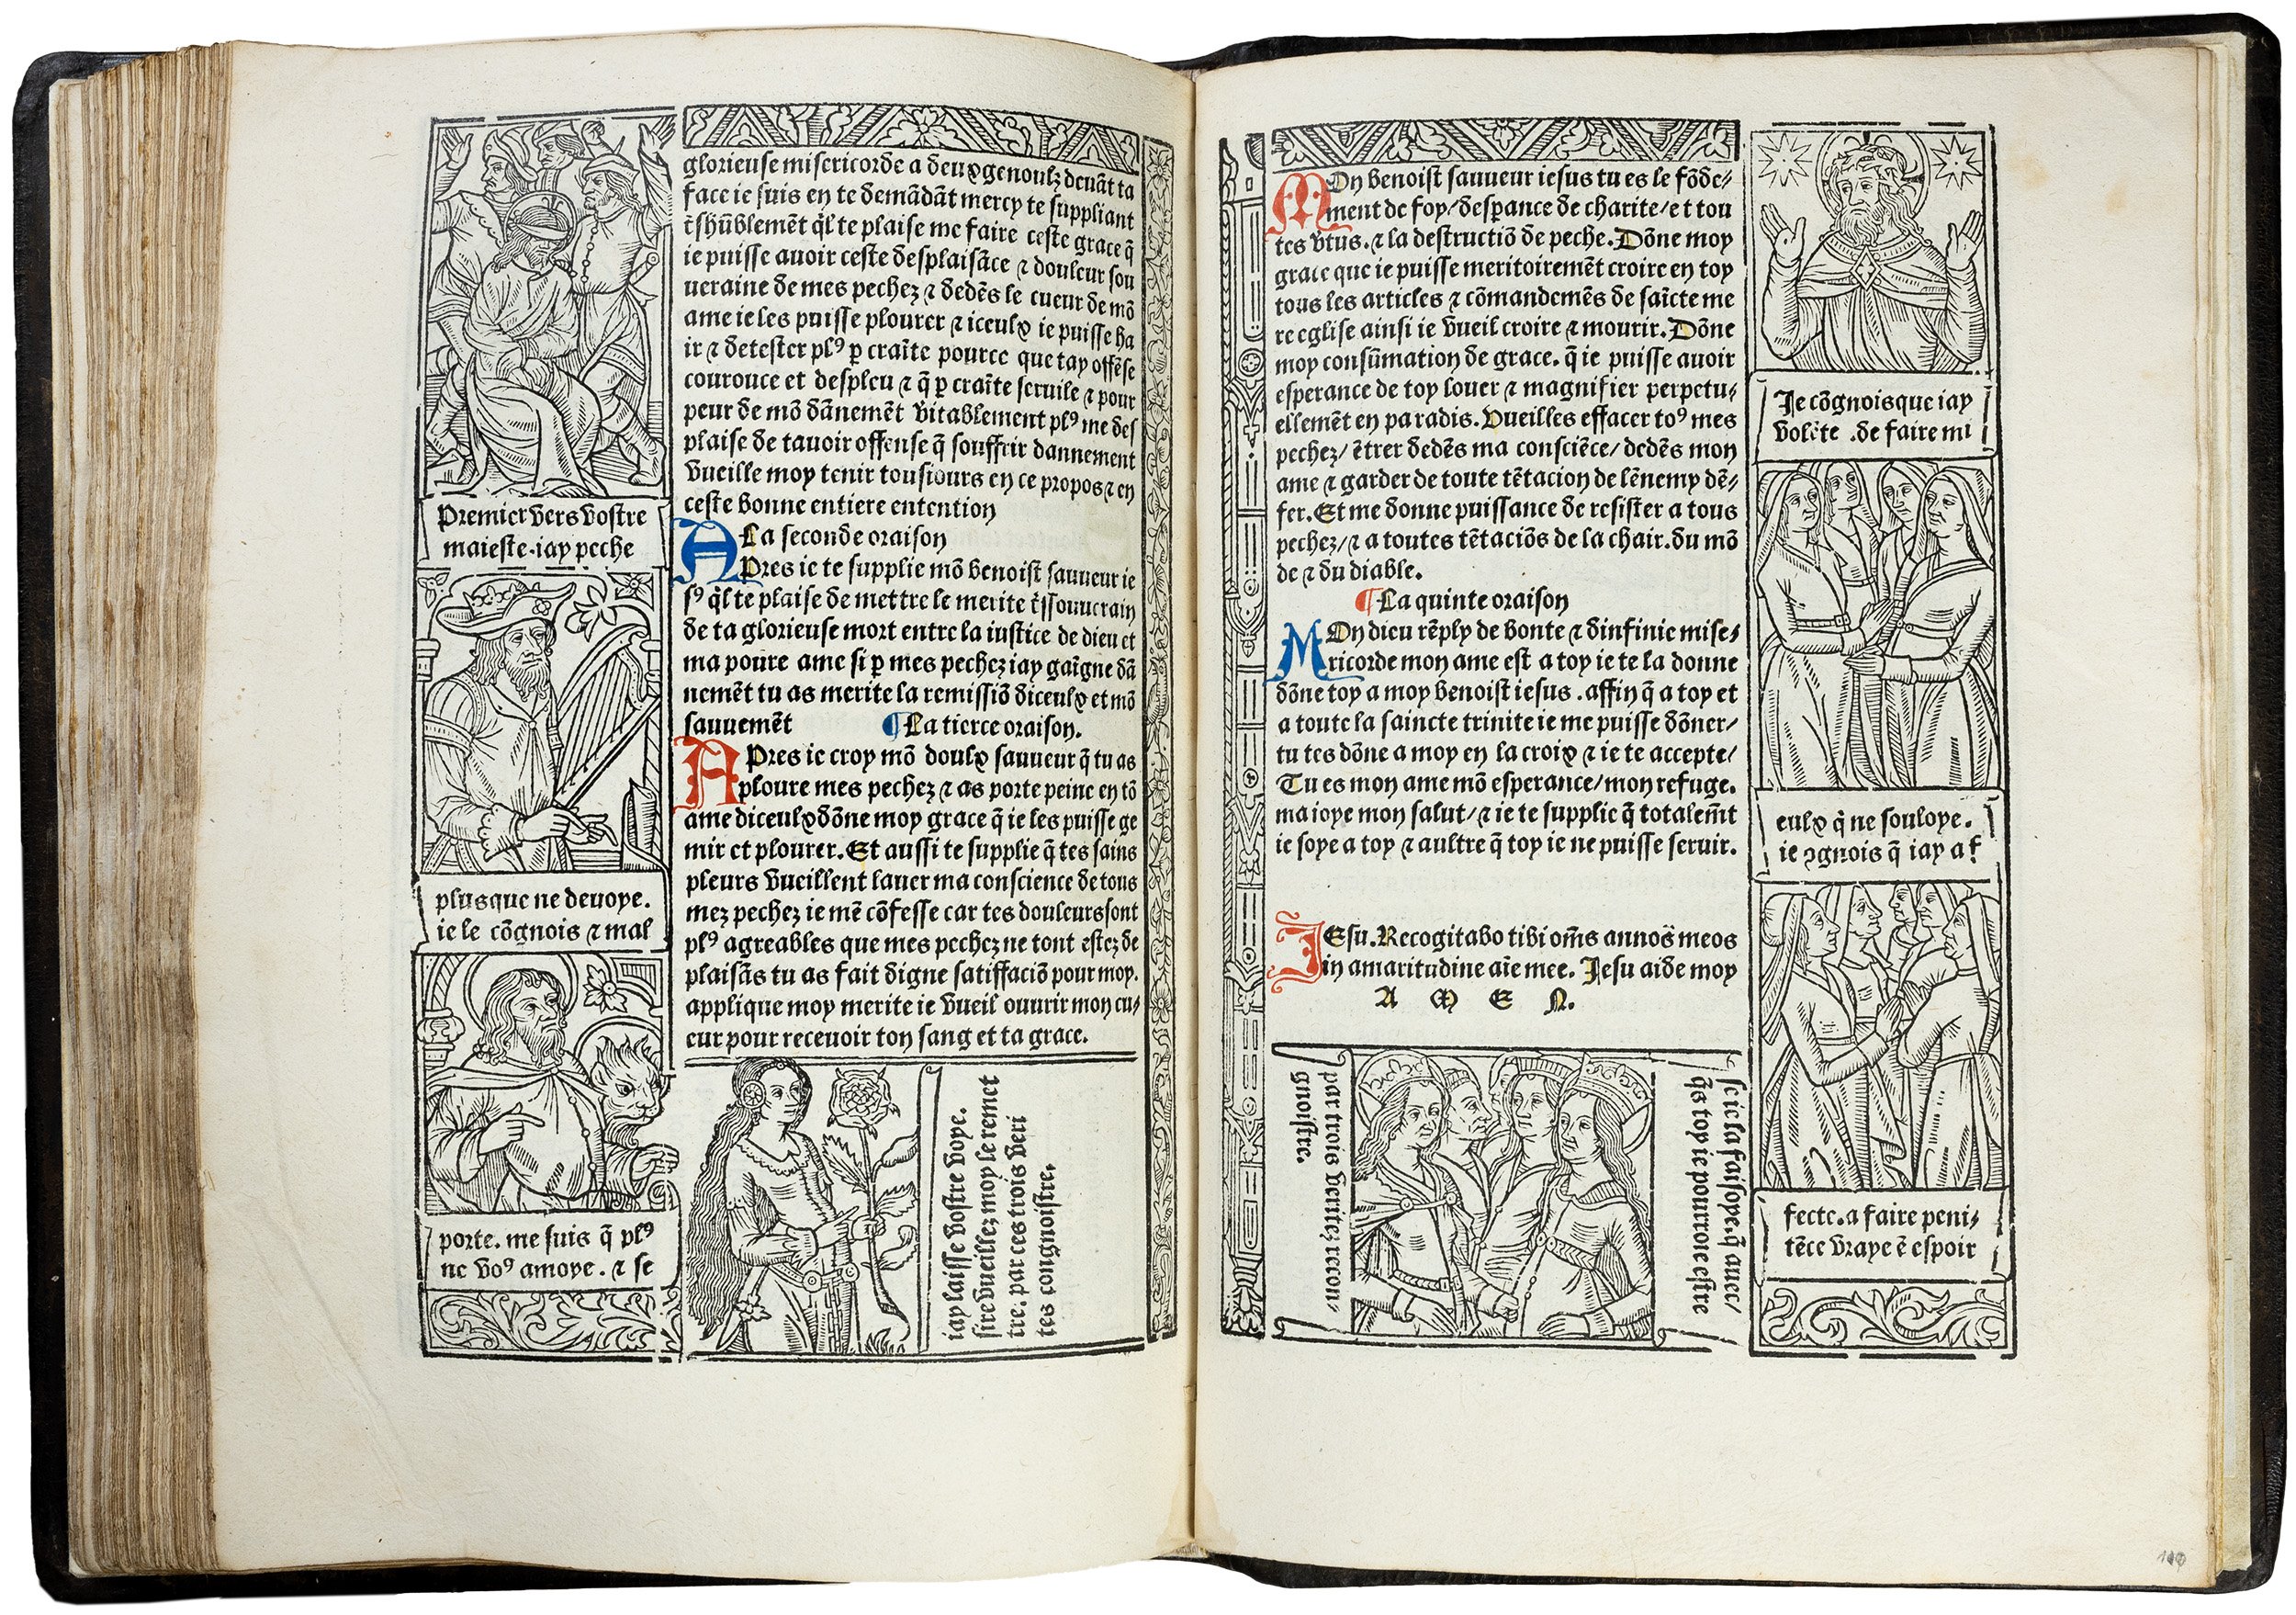 Grandes-heures-royales-verard-1488-1489-printed-book-of-hours-horae-bmv-112.jpg